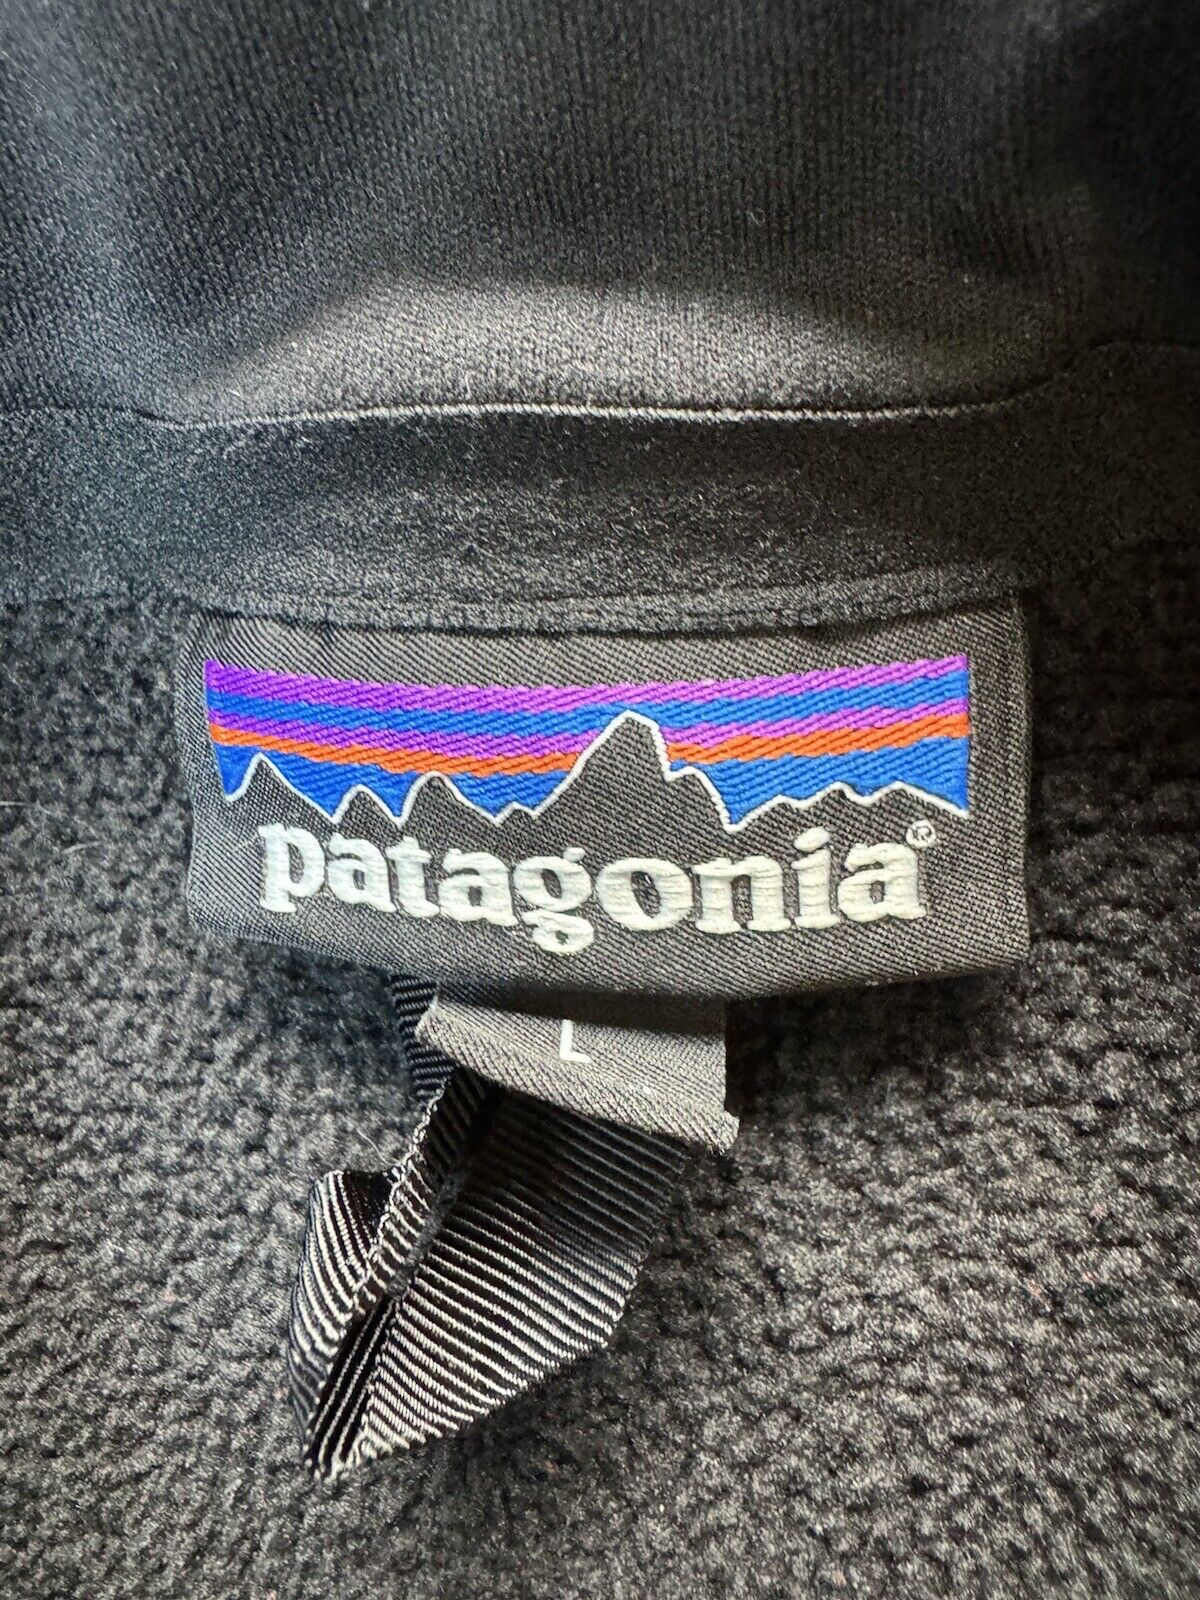 Patagonia Men’s Vest Size L 